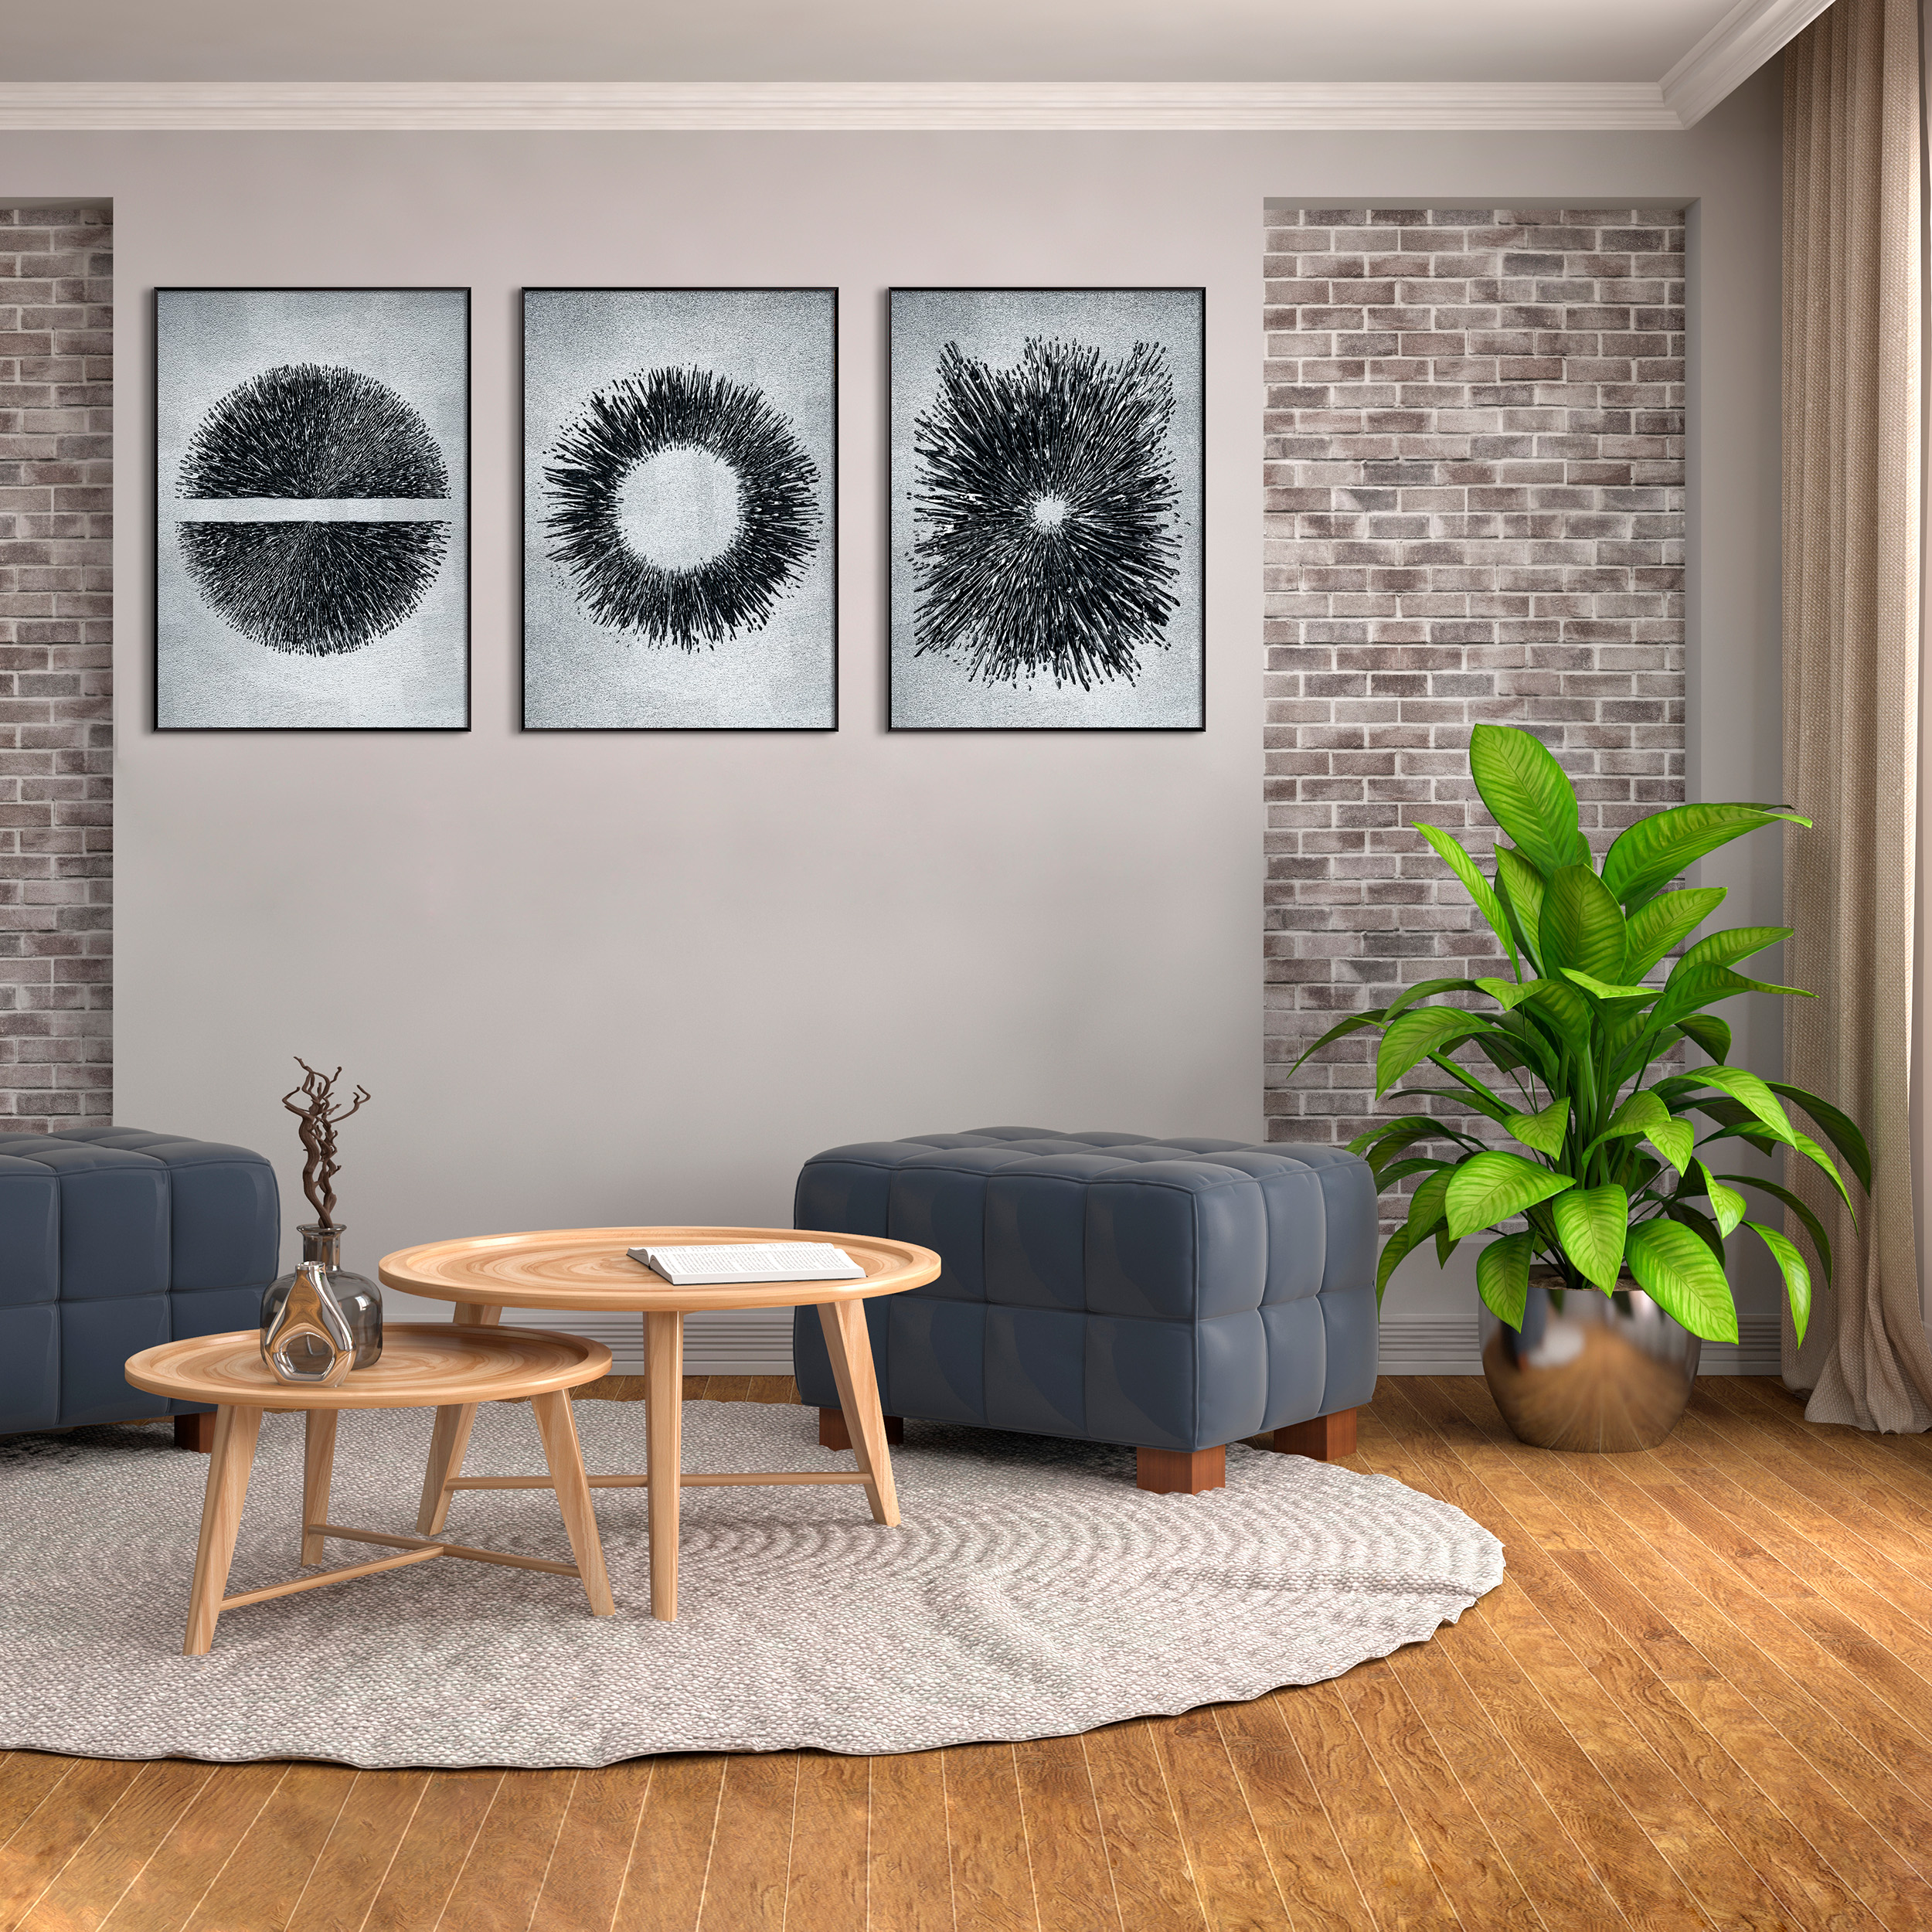 DekoArte - Cuadros decoracion salon modernos CIRCULOS EFECTO RELIEVE 50x70  cm x3 piezas - Cuadros con marco negro incluido